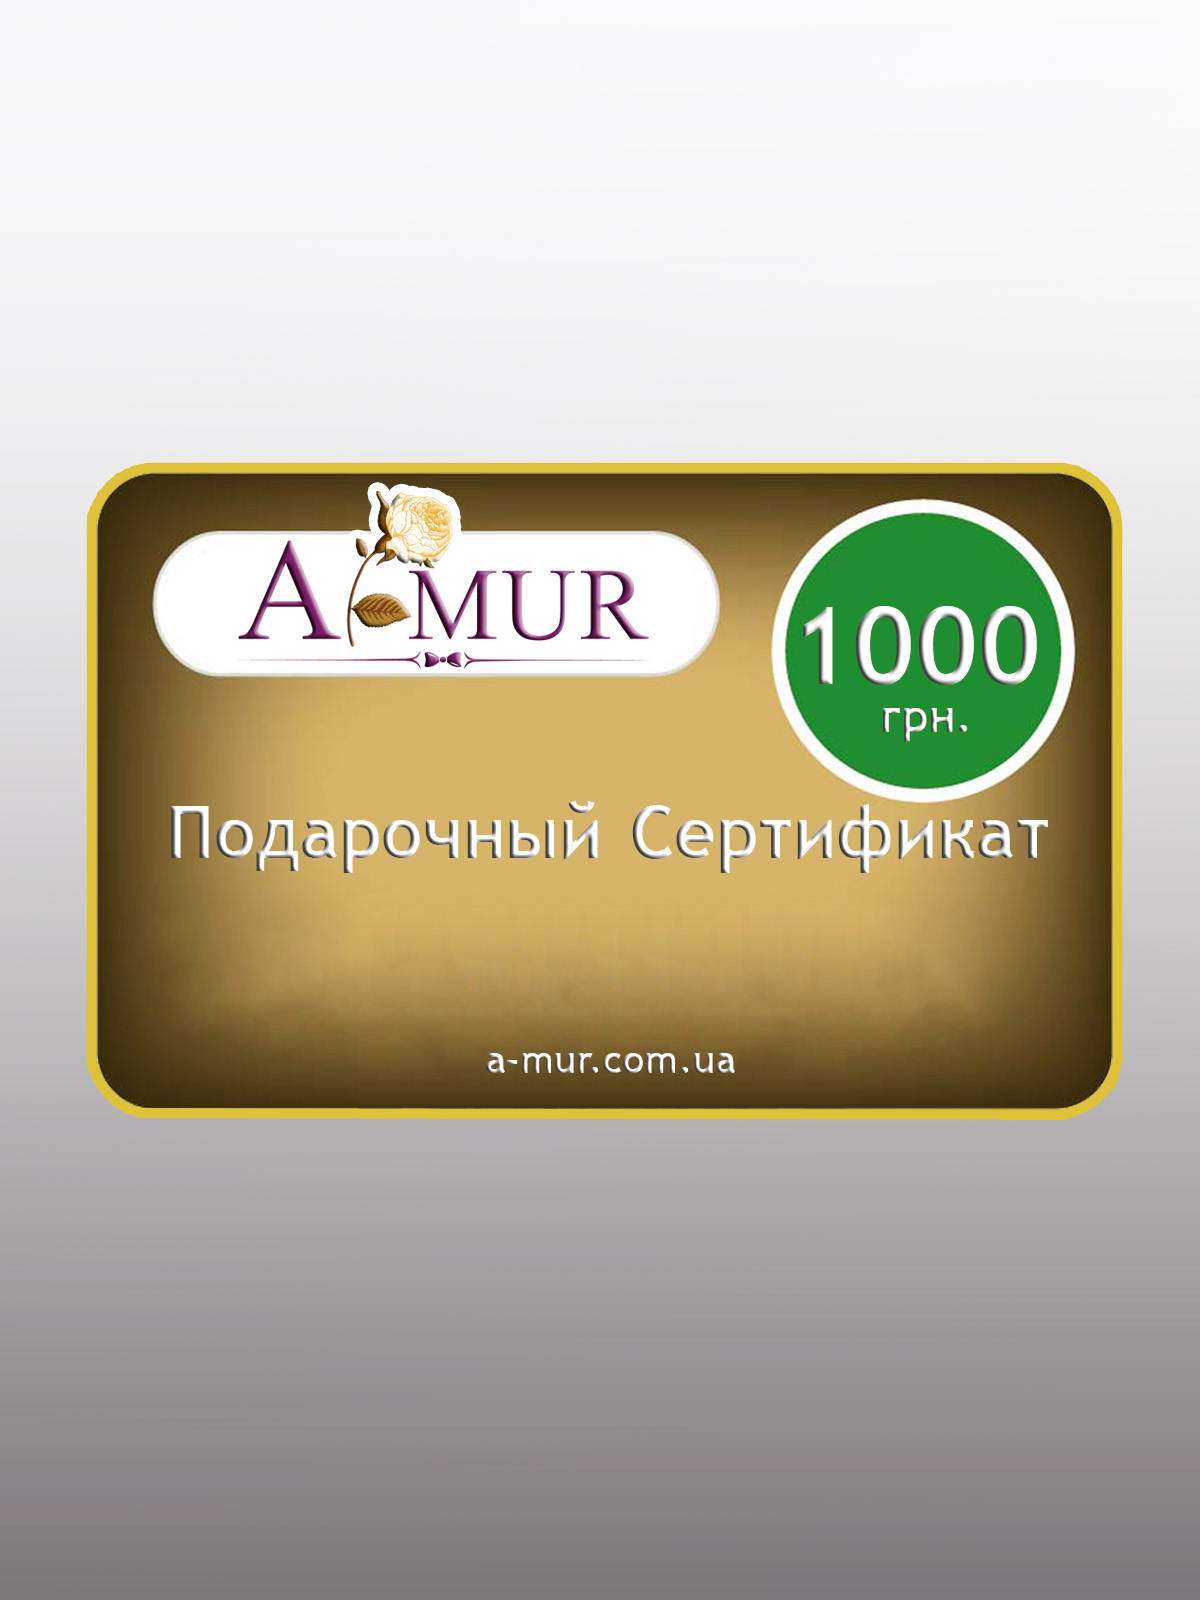 Подарочный сертификат на сумму 1000 грн